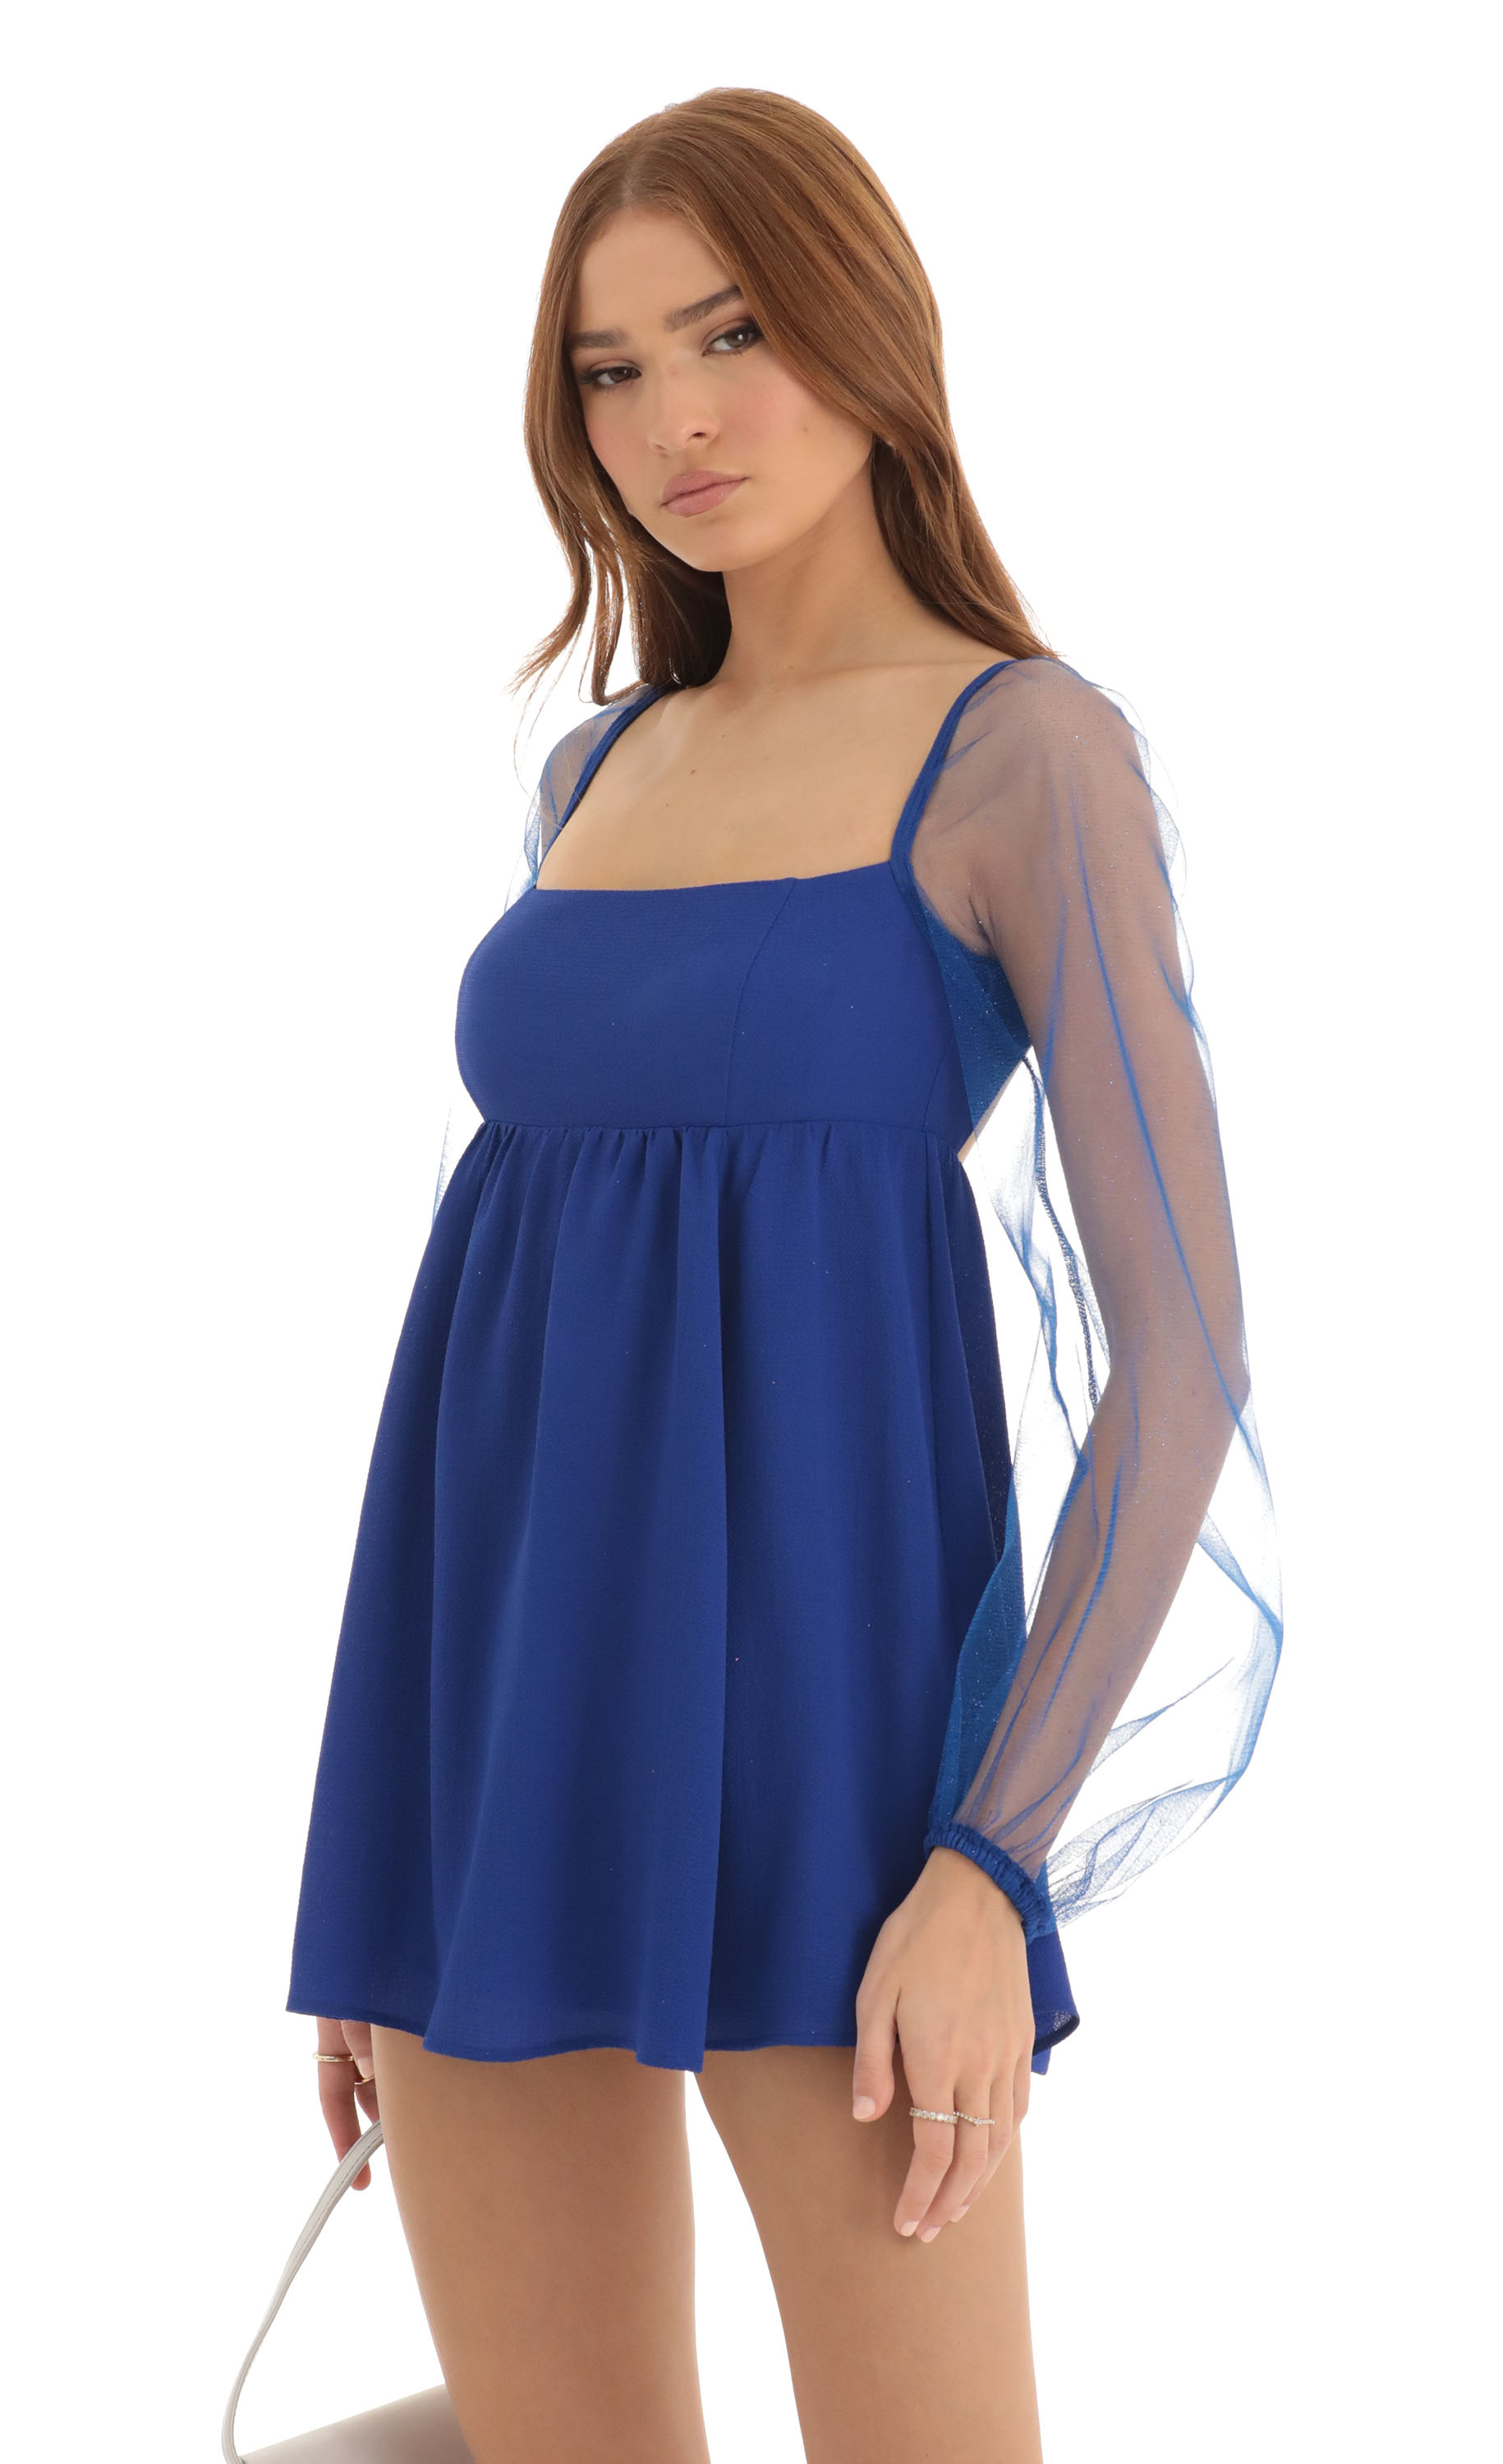 Birdie Glitter Long Sleeve Baby Doll Dress in Blue